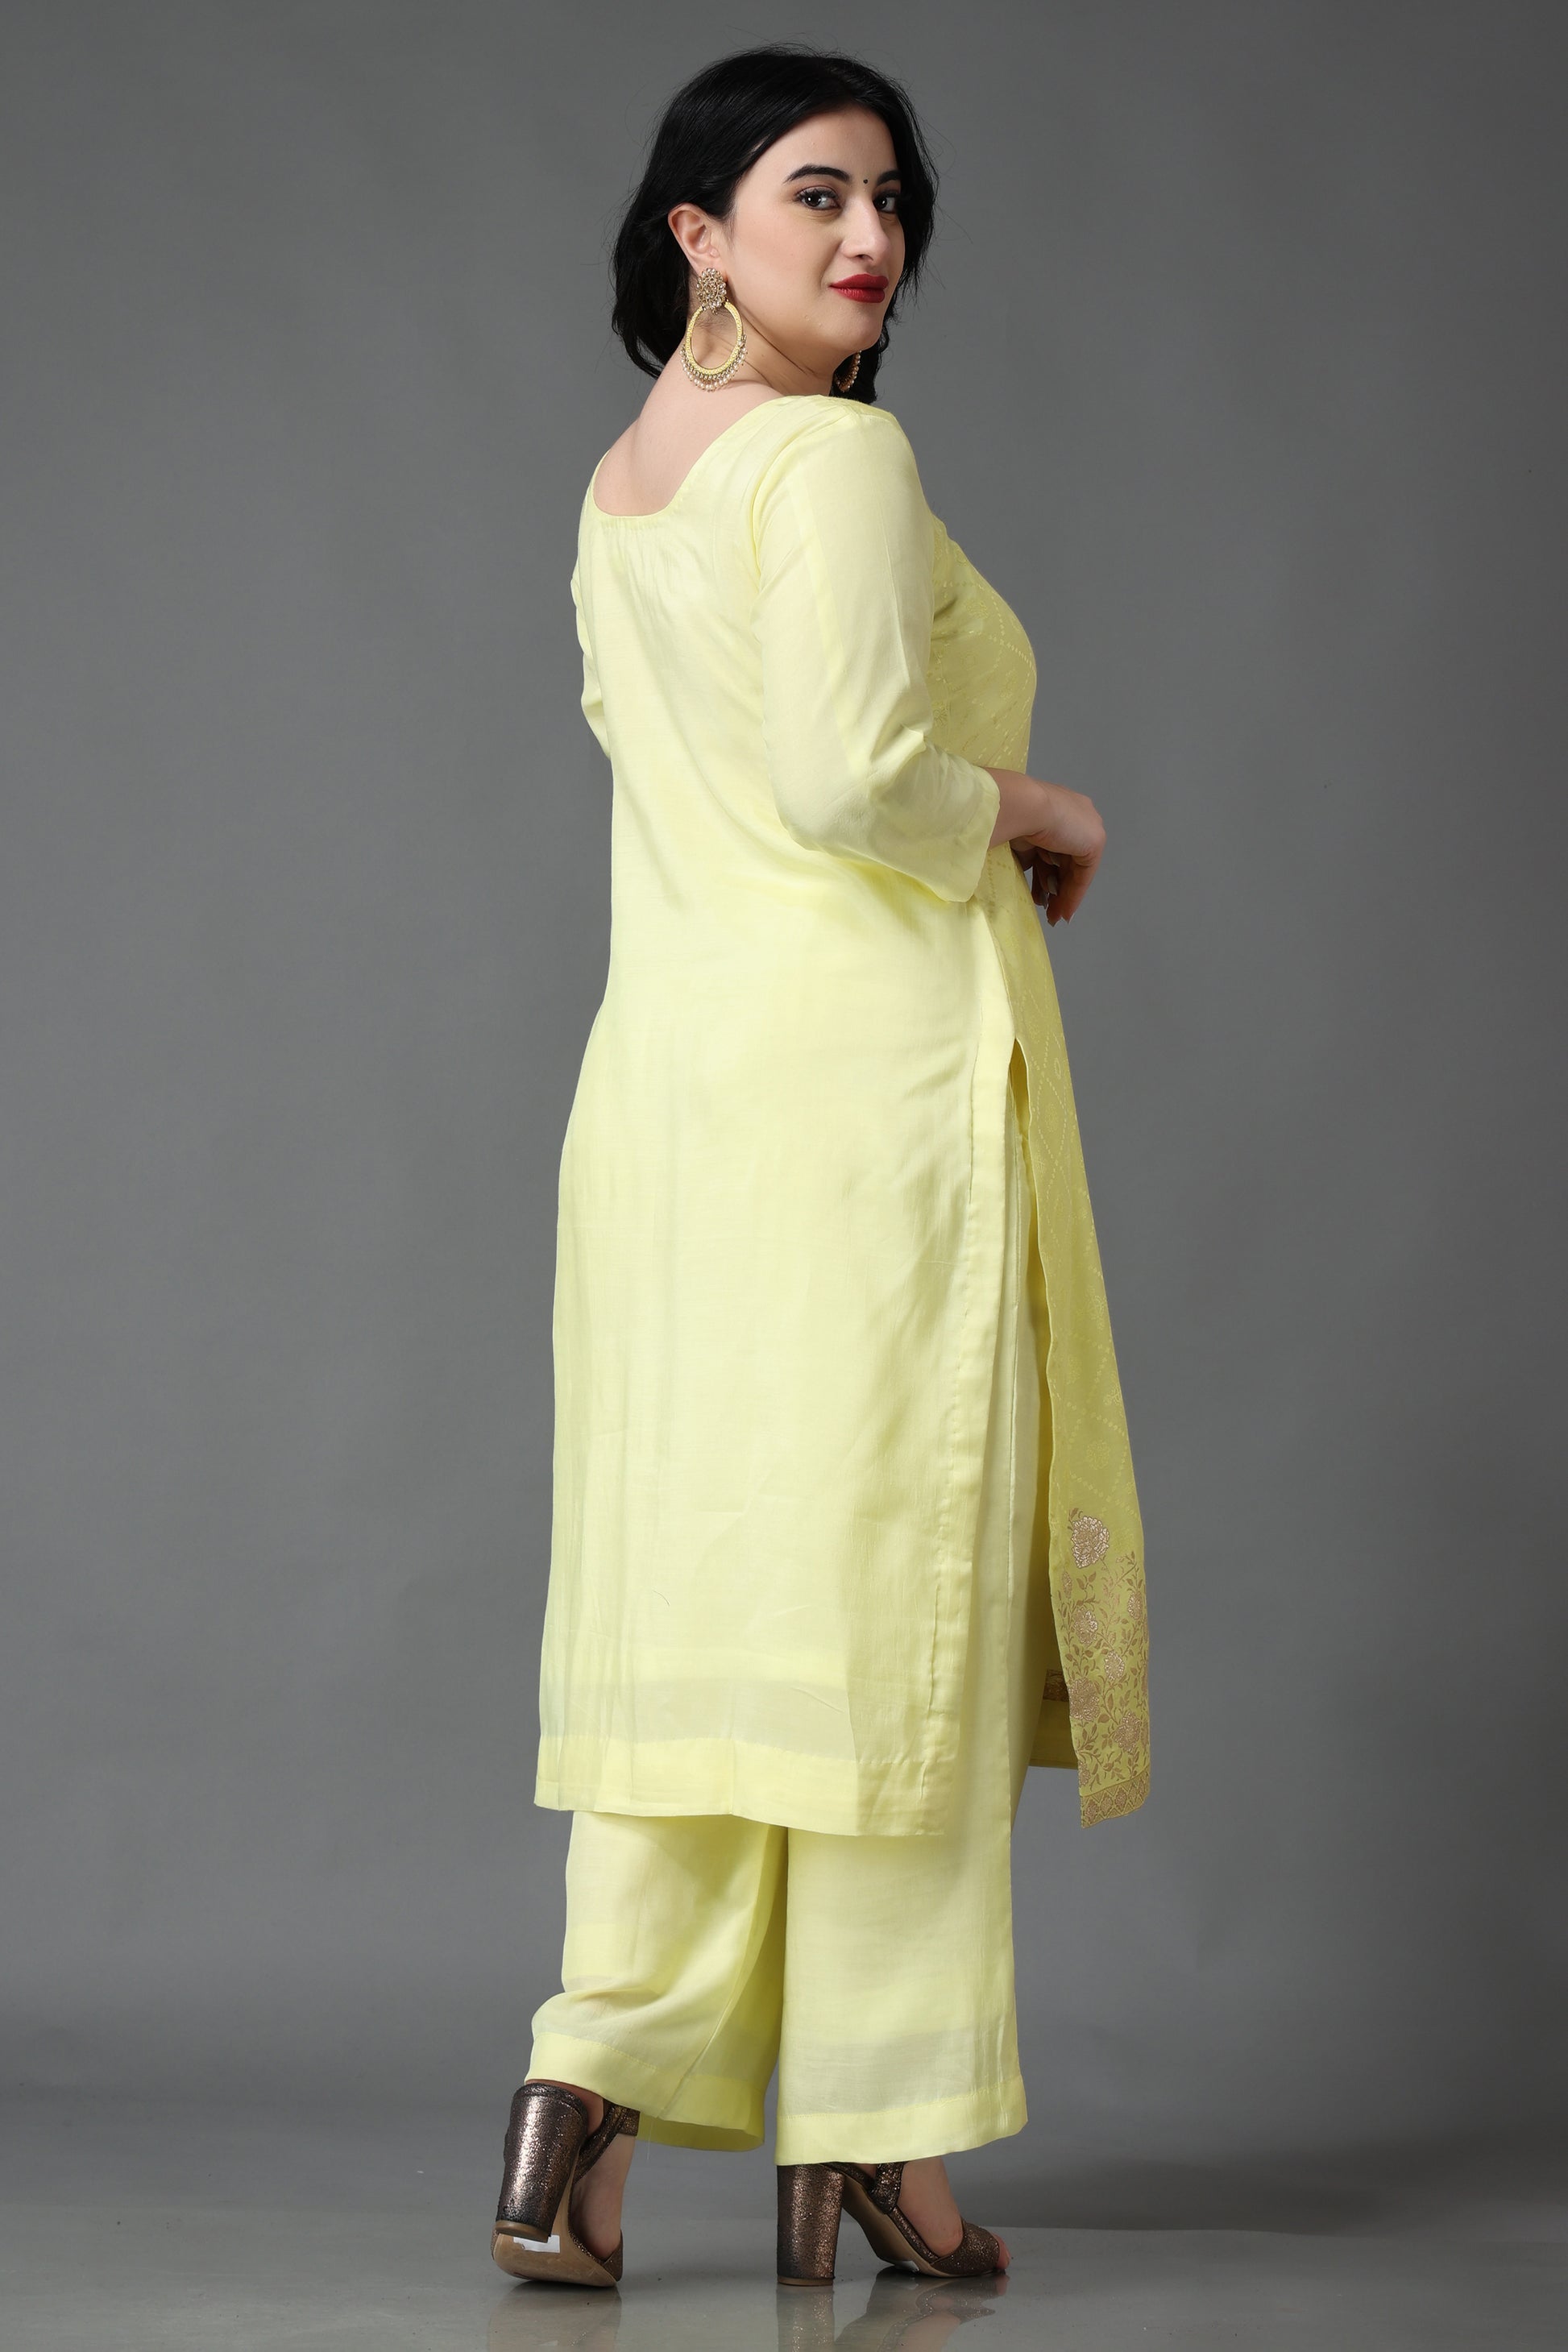 Buy Ladies Fancy Suit & Party Wear Salwar Suits For Ladies - Apella